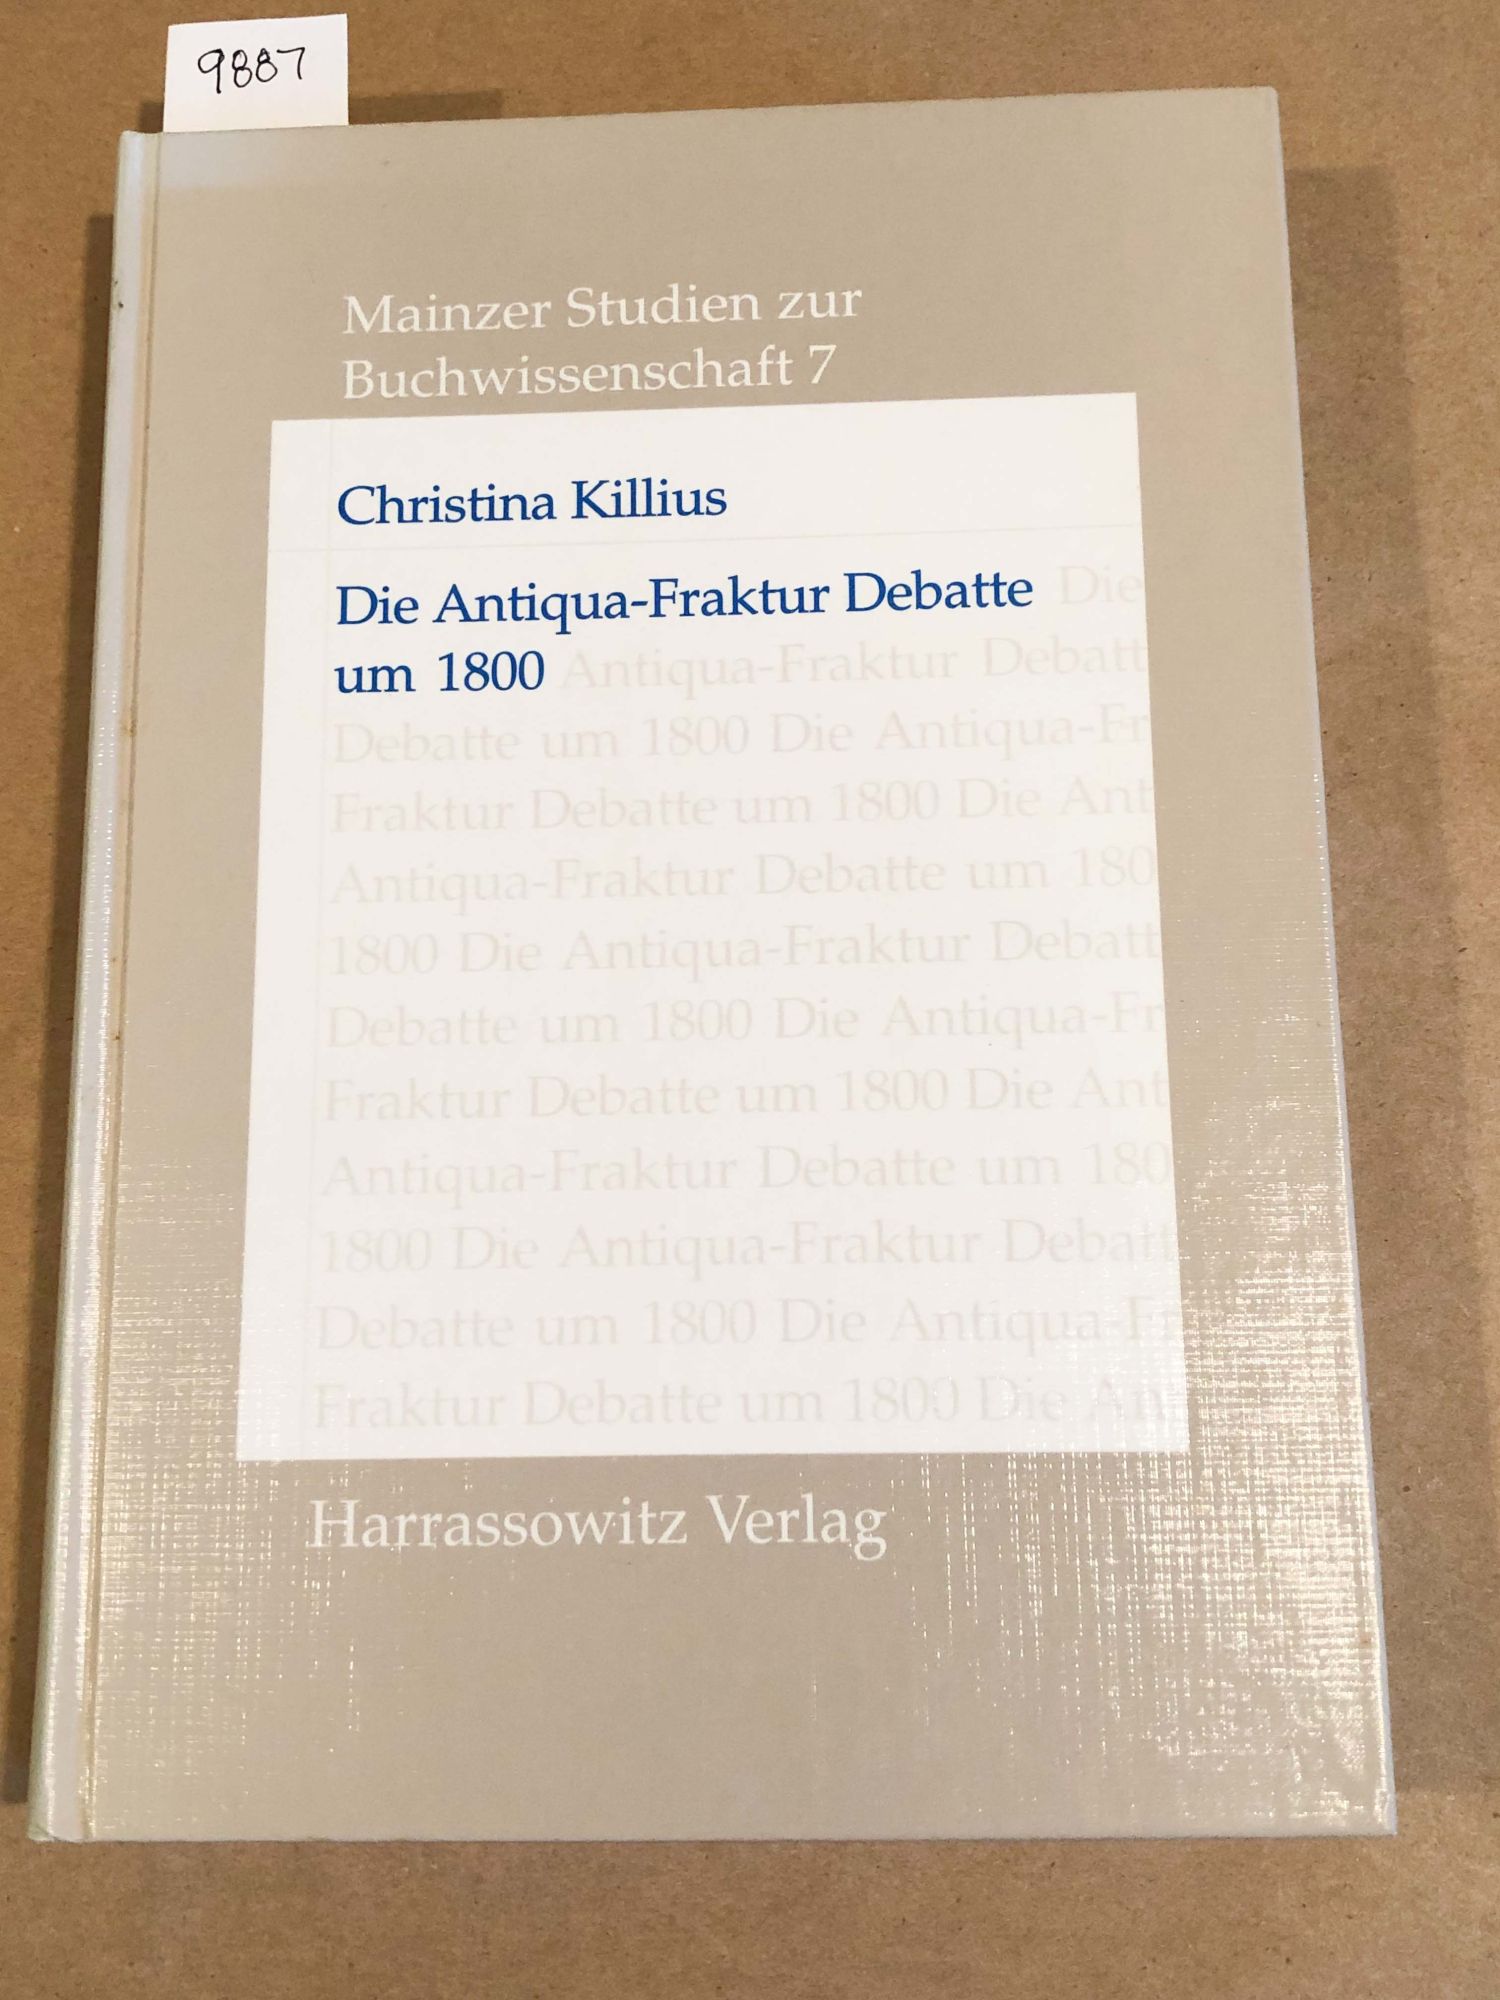 Die Antiqua- Fraktur Debatte um 1800 und ihre historische Herleitung (Mainzer Studien zur Buchwissenschaft Band 7) - Christina Killius